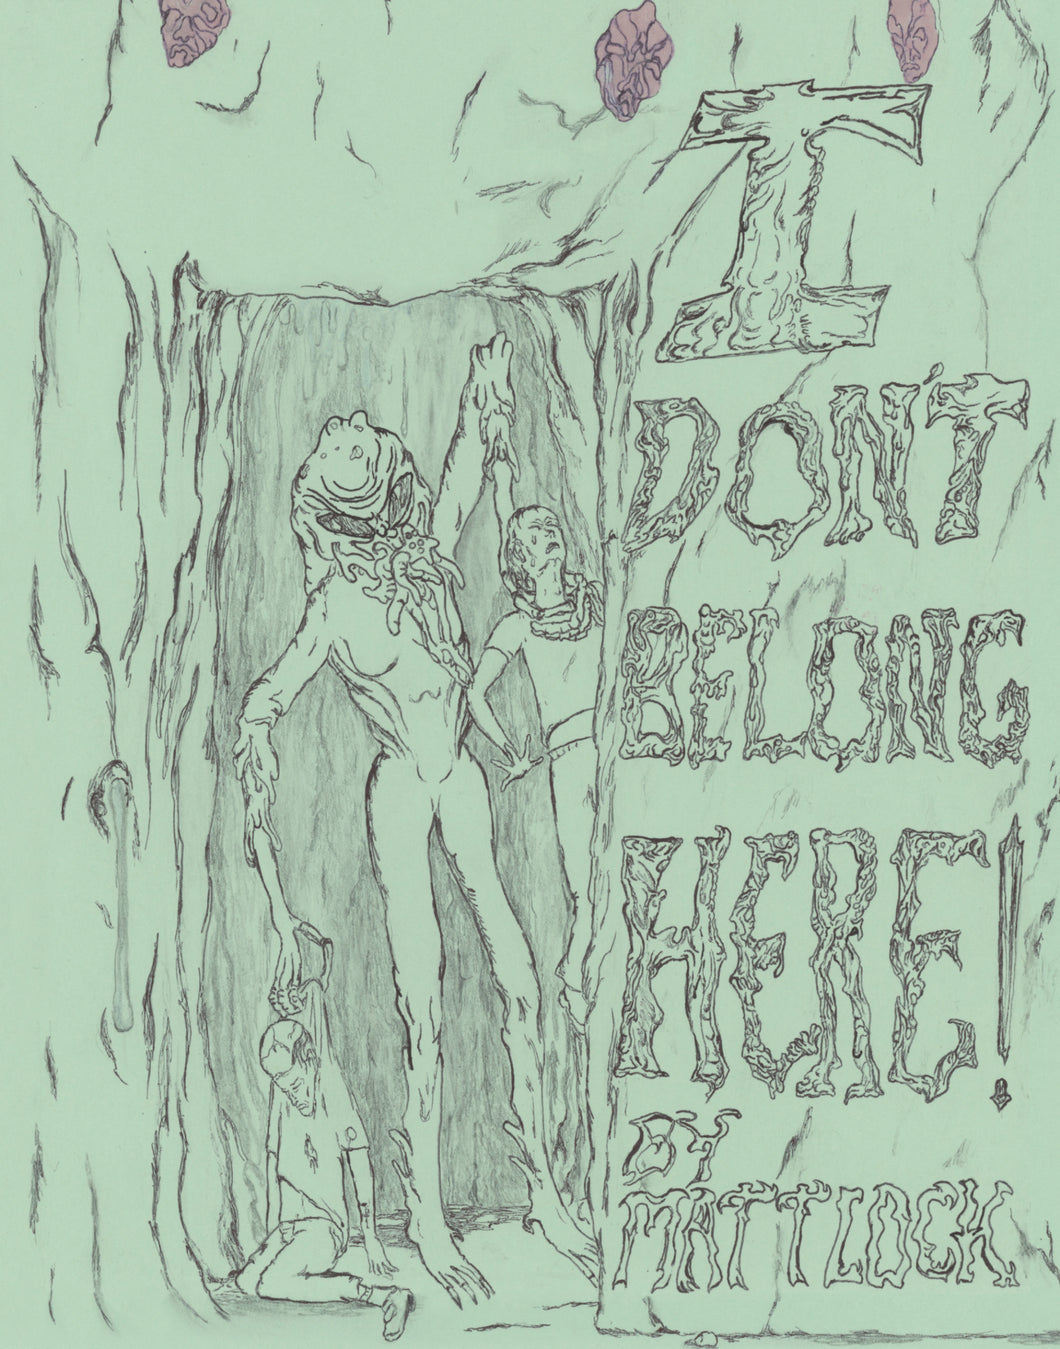 I Don't Belong Here! by Matt Lock